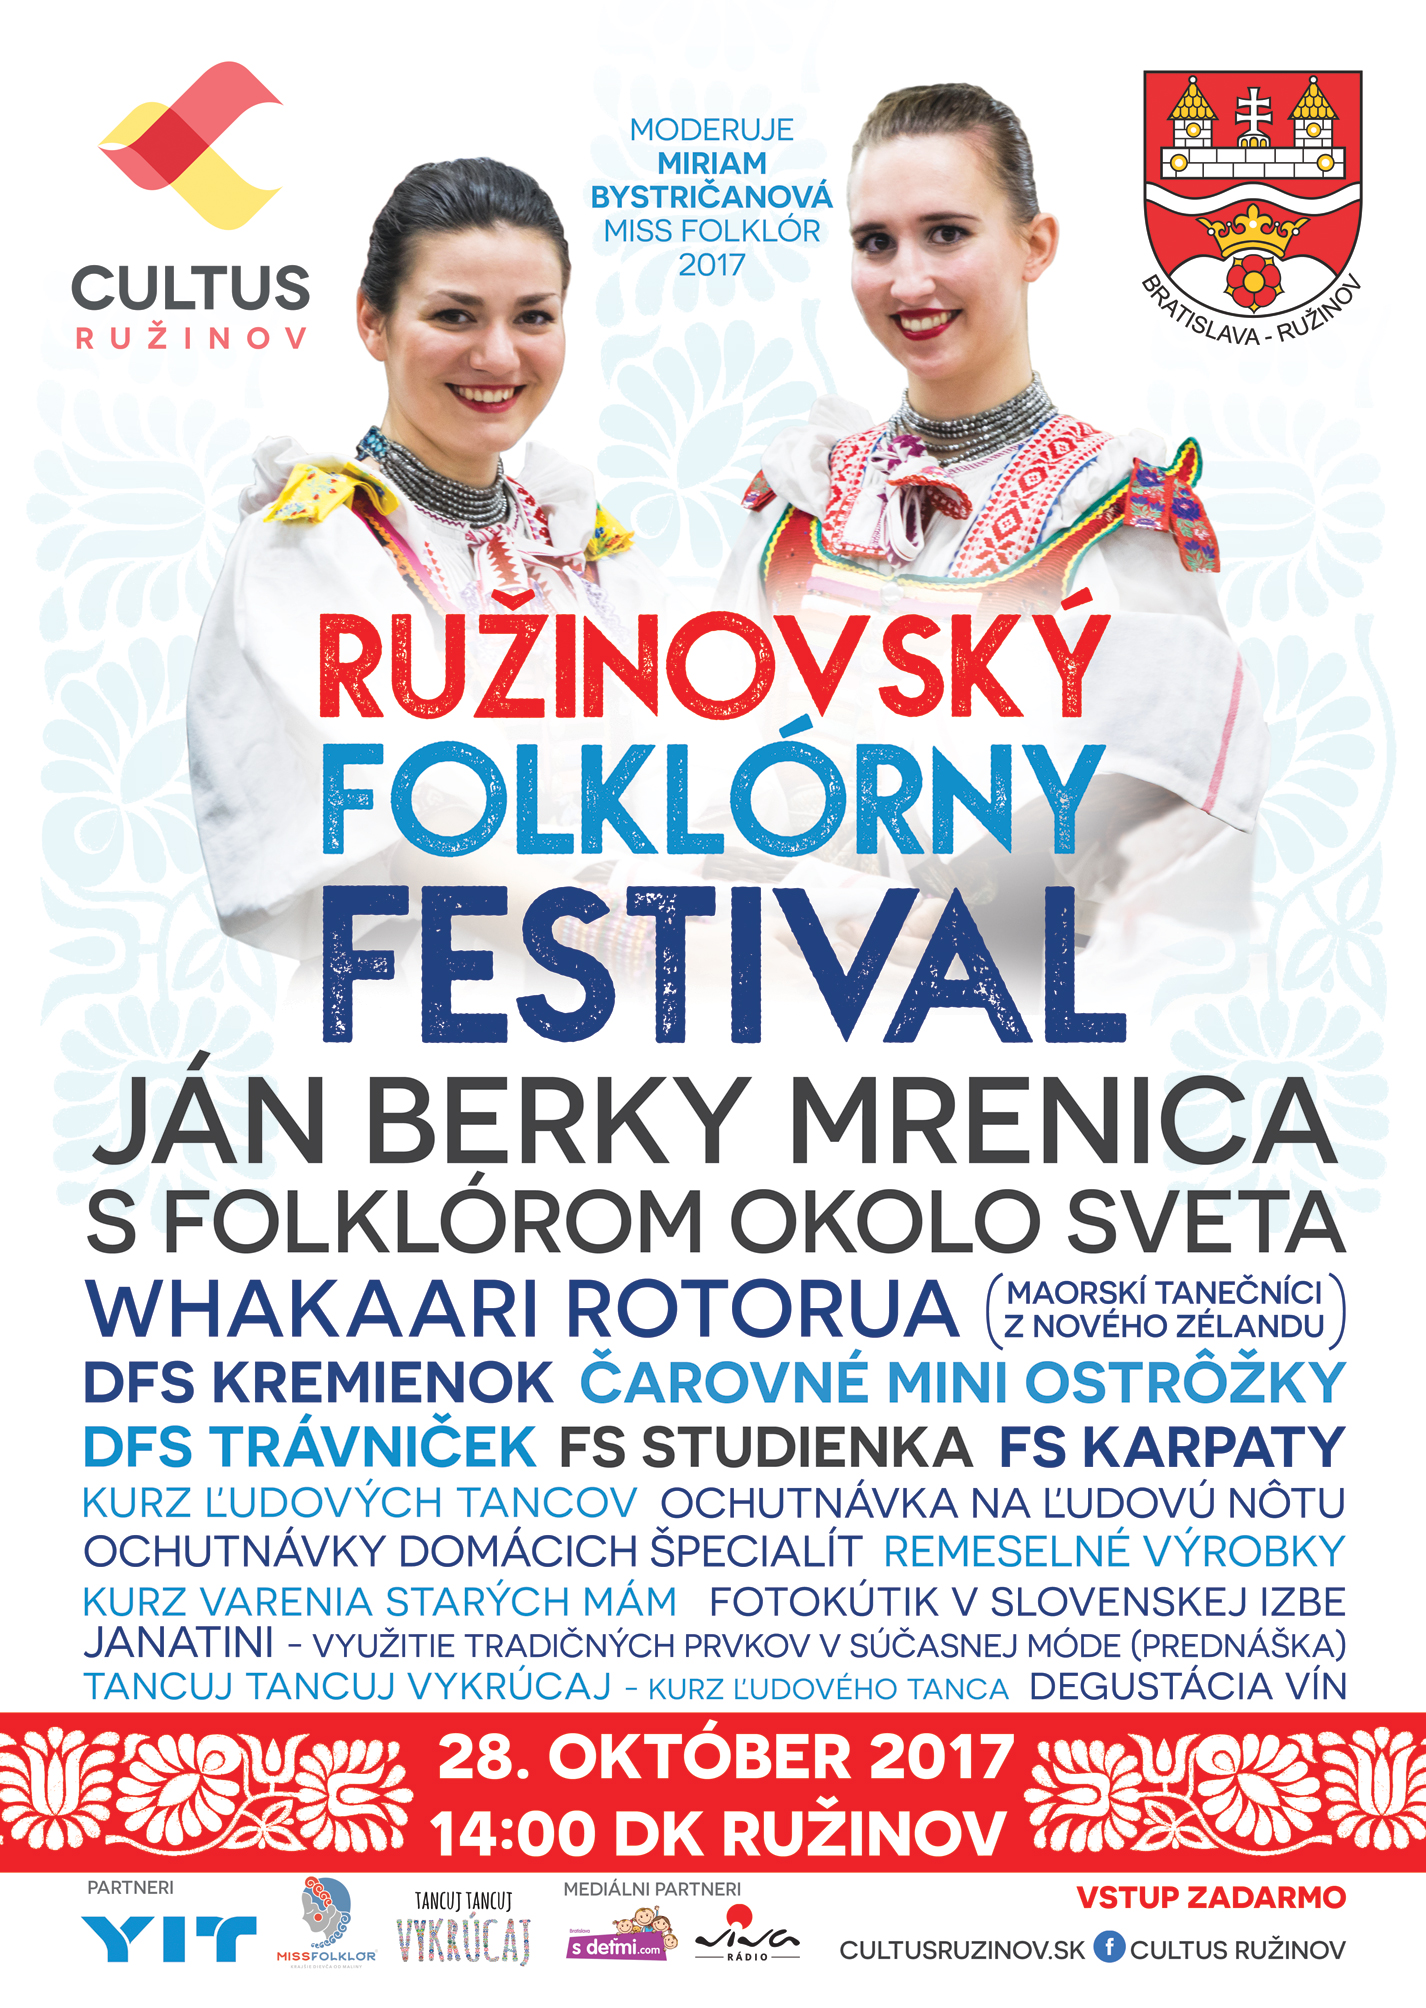 RUINOVSK FOLKLRNY FESTIVAL